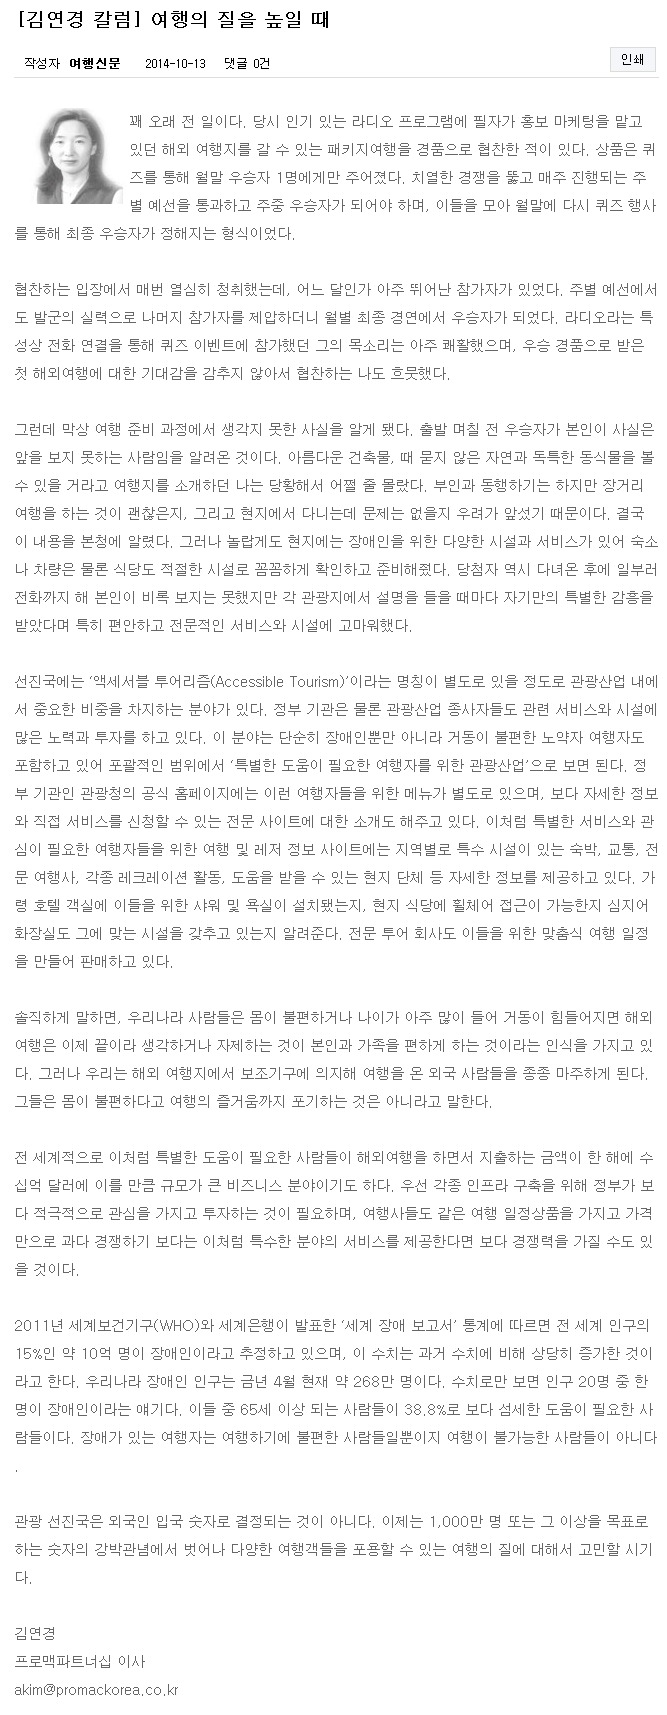 김연경 칼럼  여행의 질을 높일 때   News   여행신문.jpeg